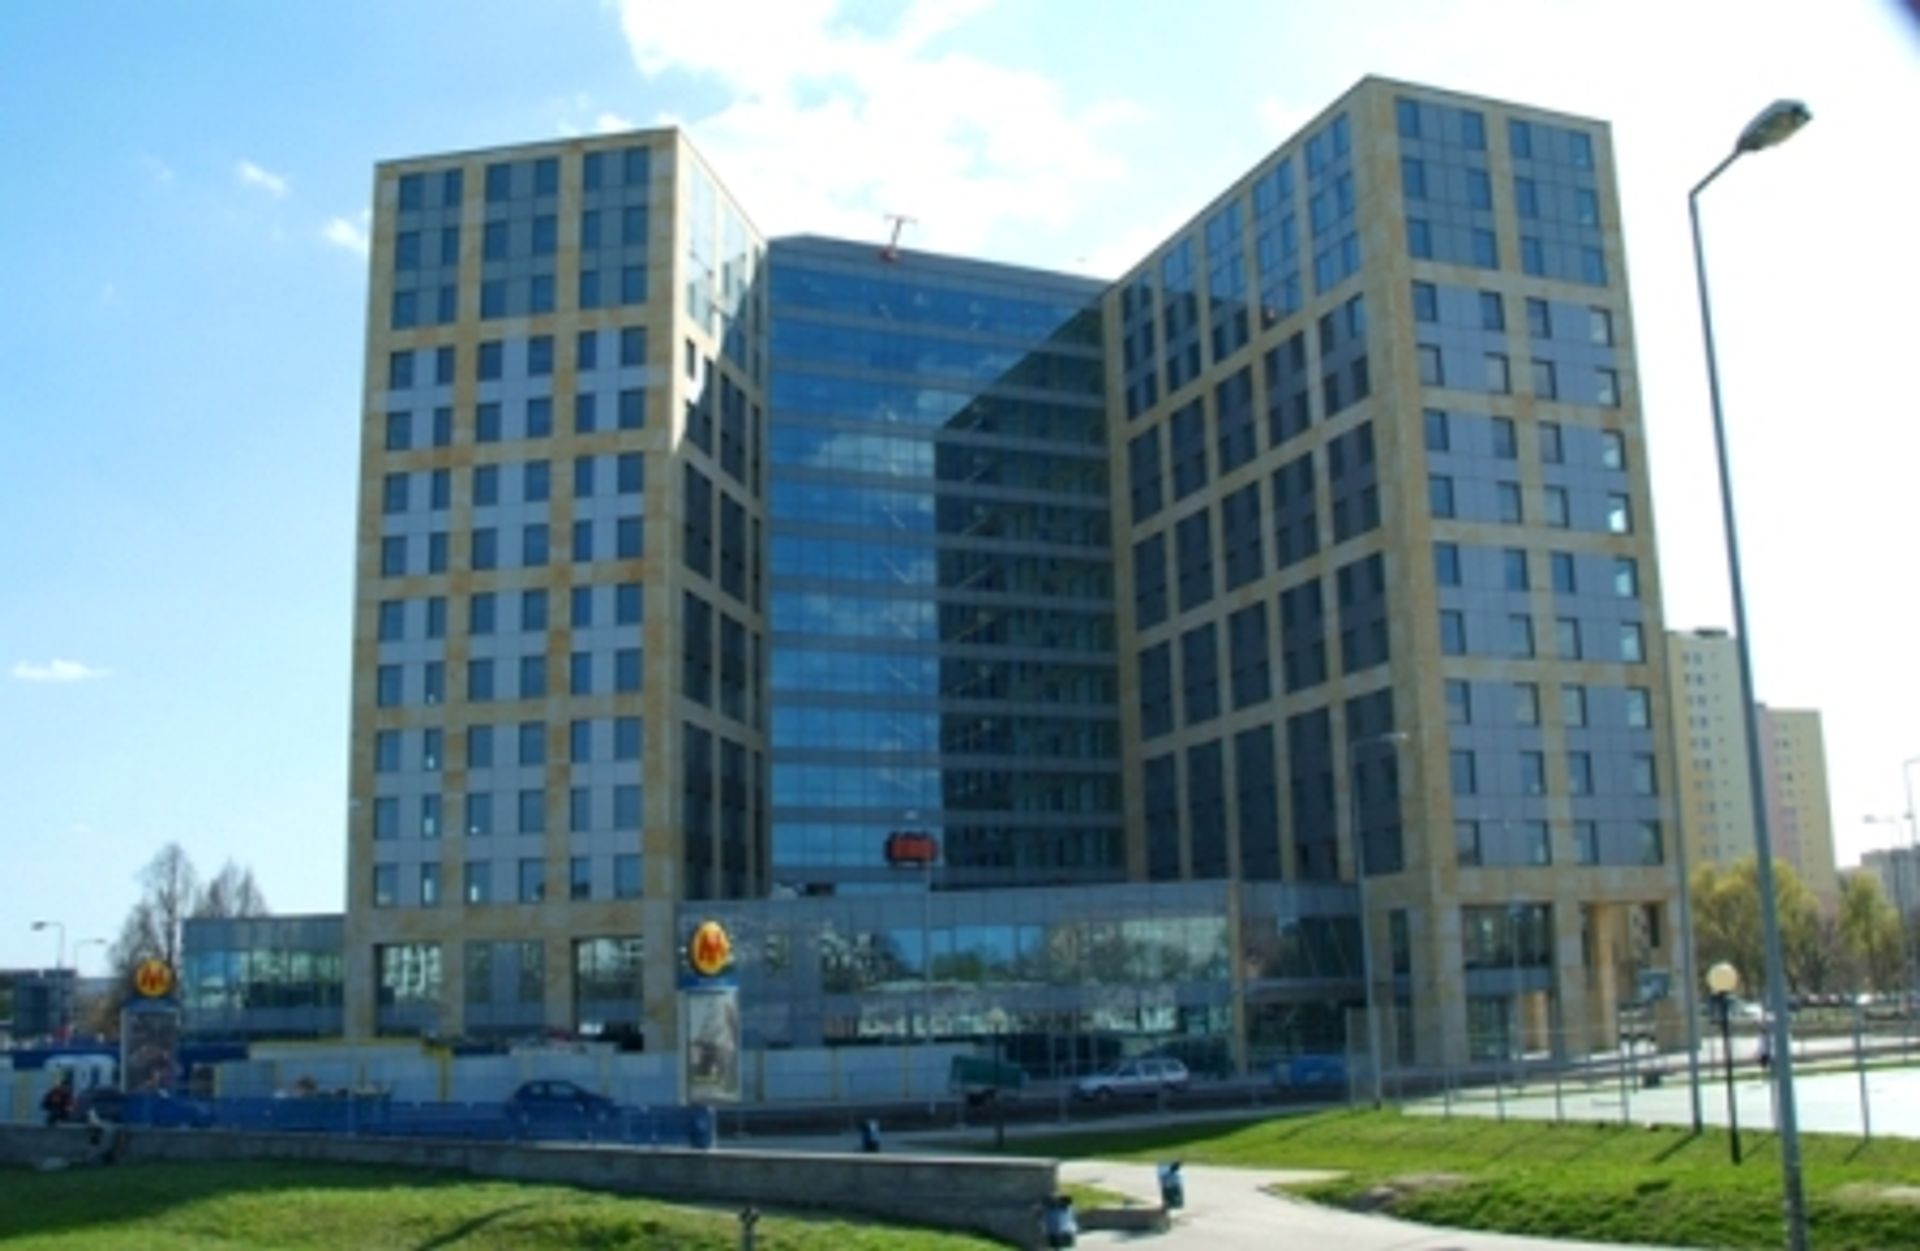  Audatex Polska wprowadza się do budynku biurowego IO-1 w Warszawie